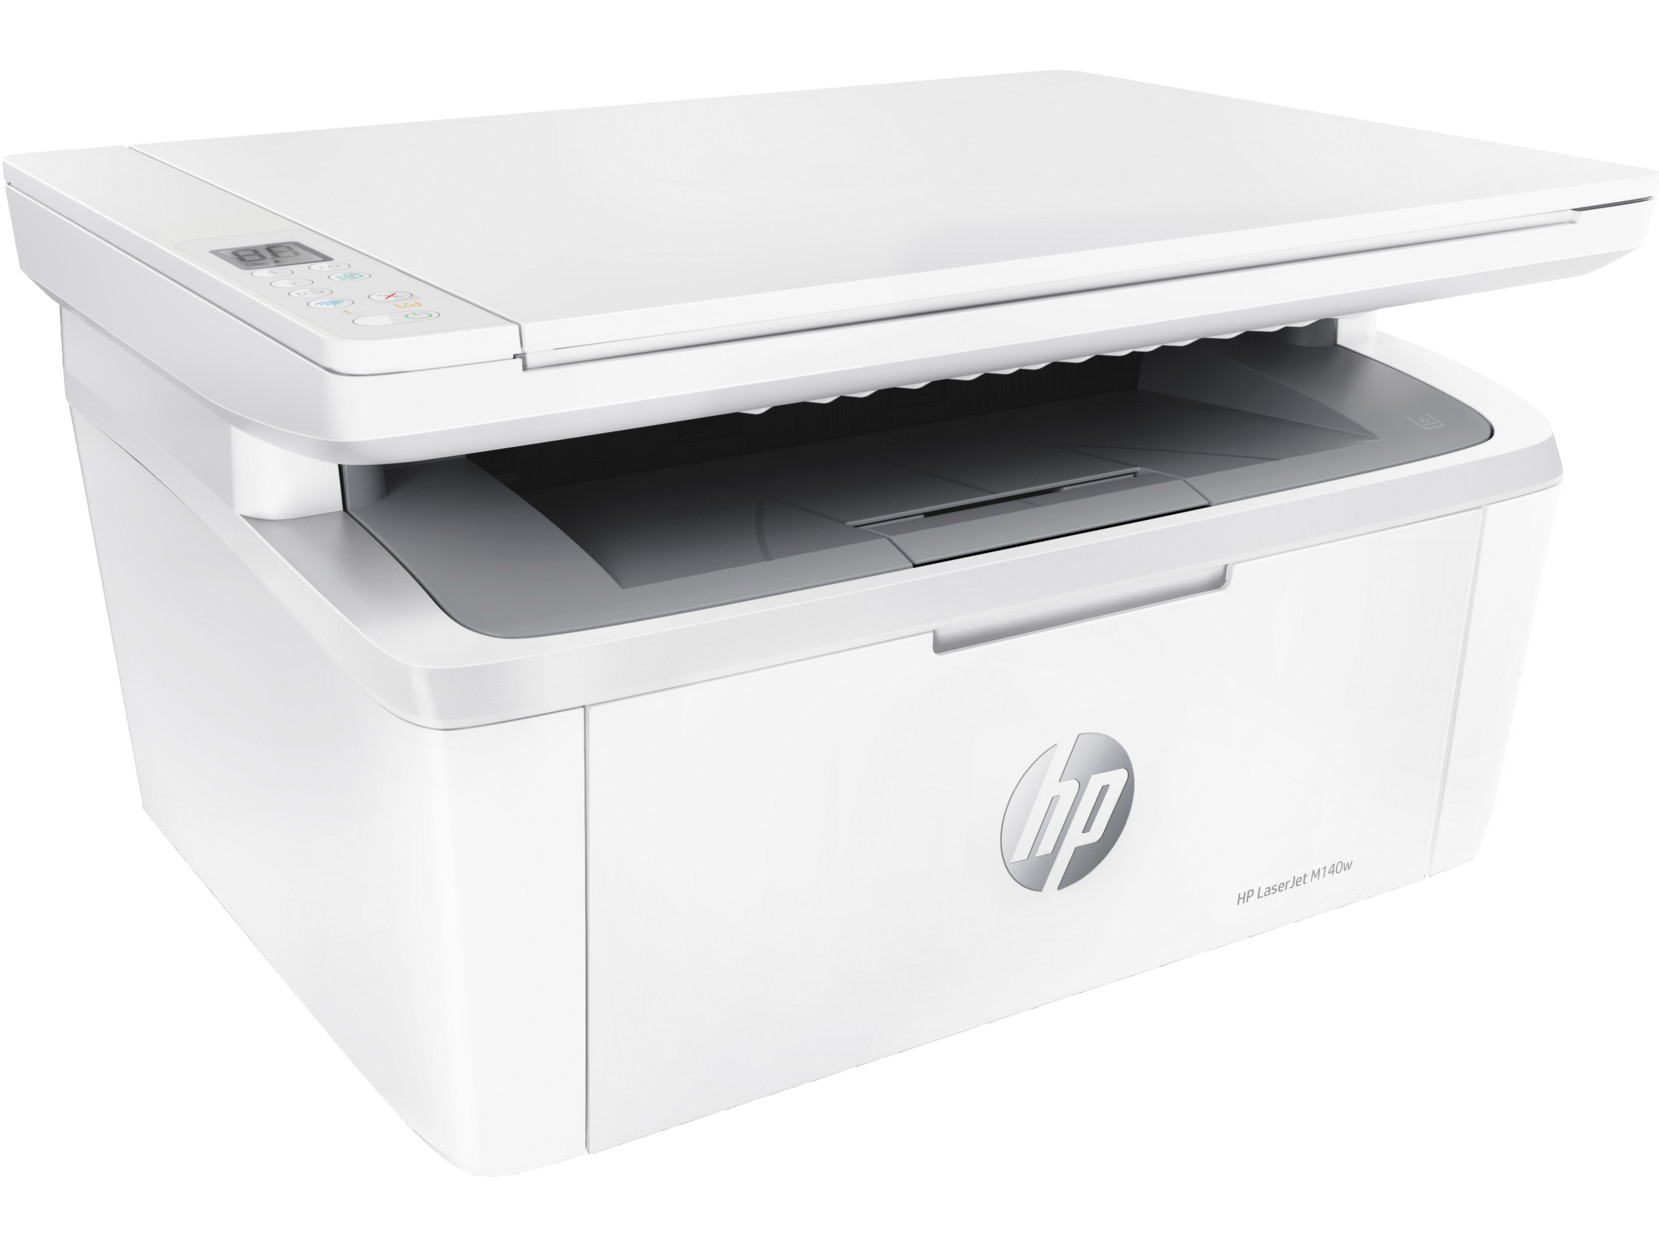 HP-LaserJet-MFP-M140w-Multifunktions-Laserdrucker